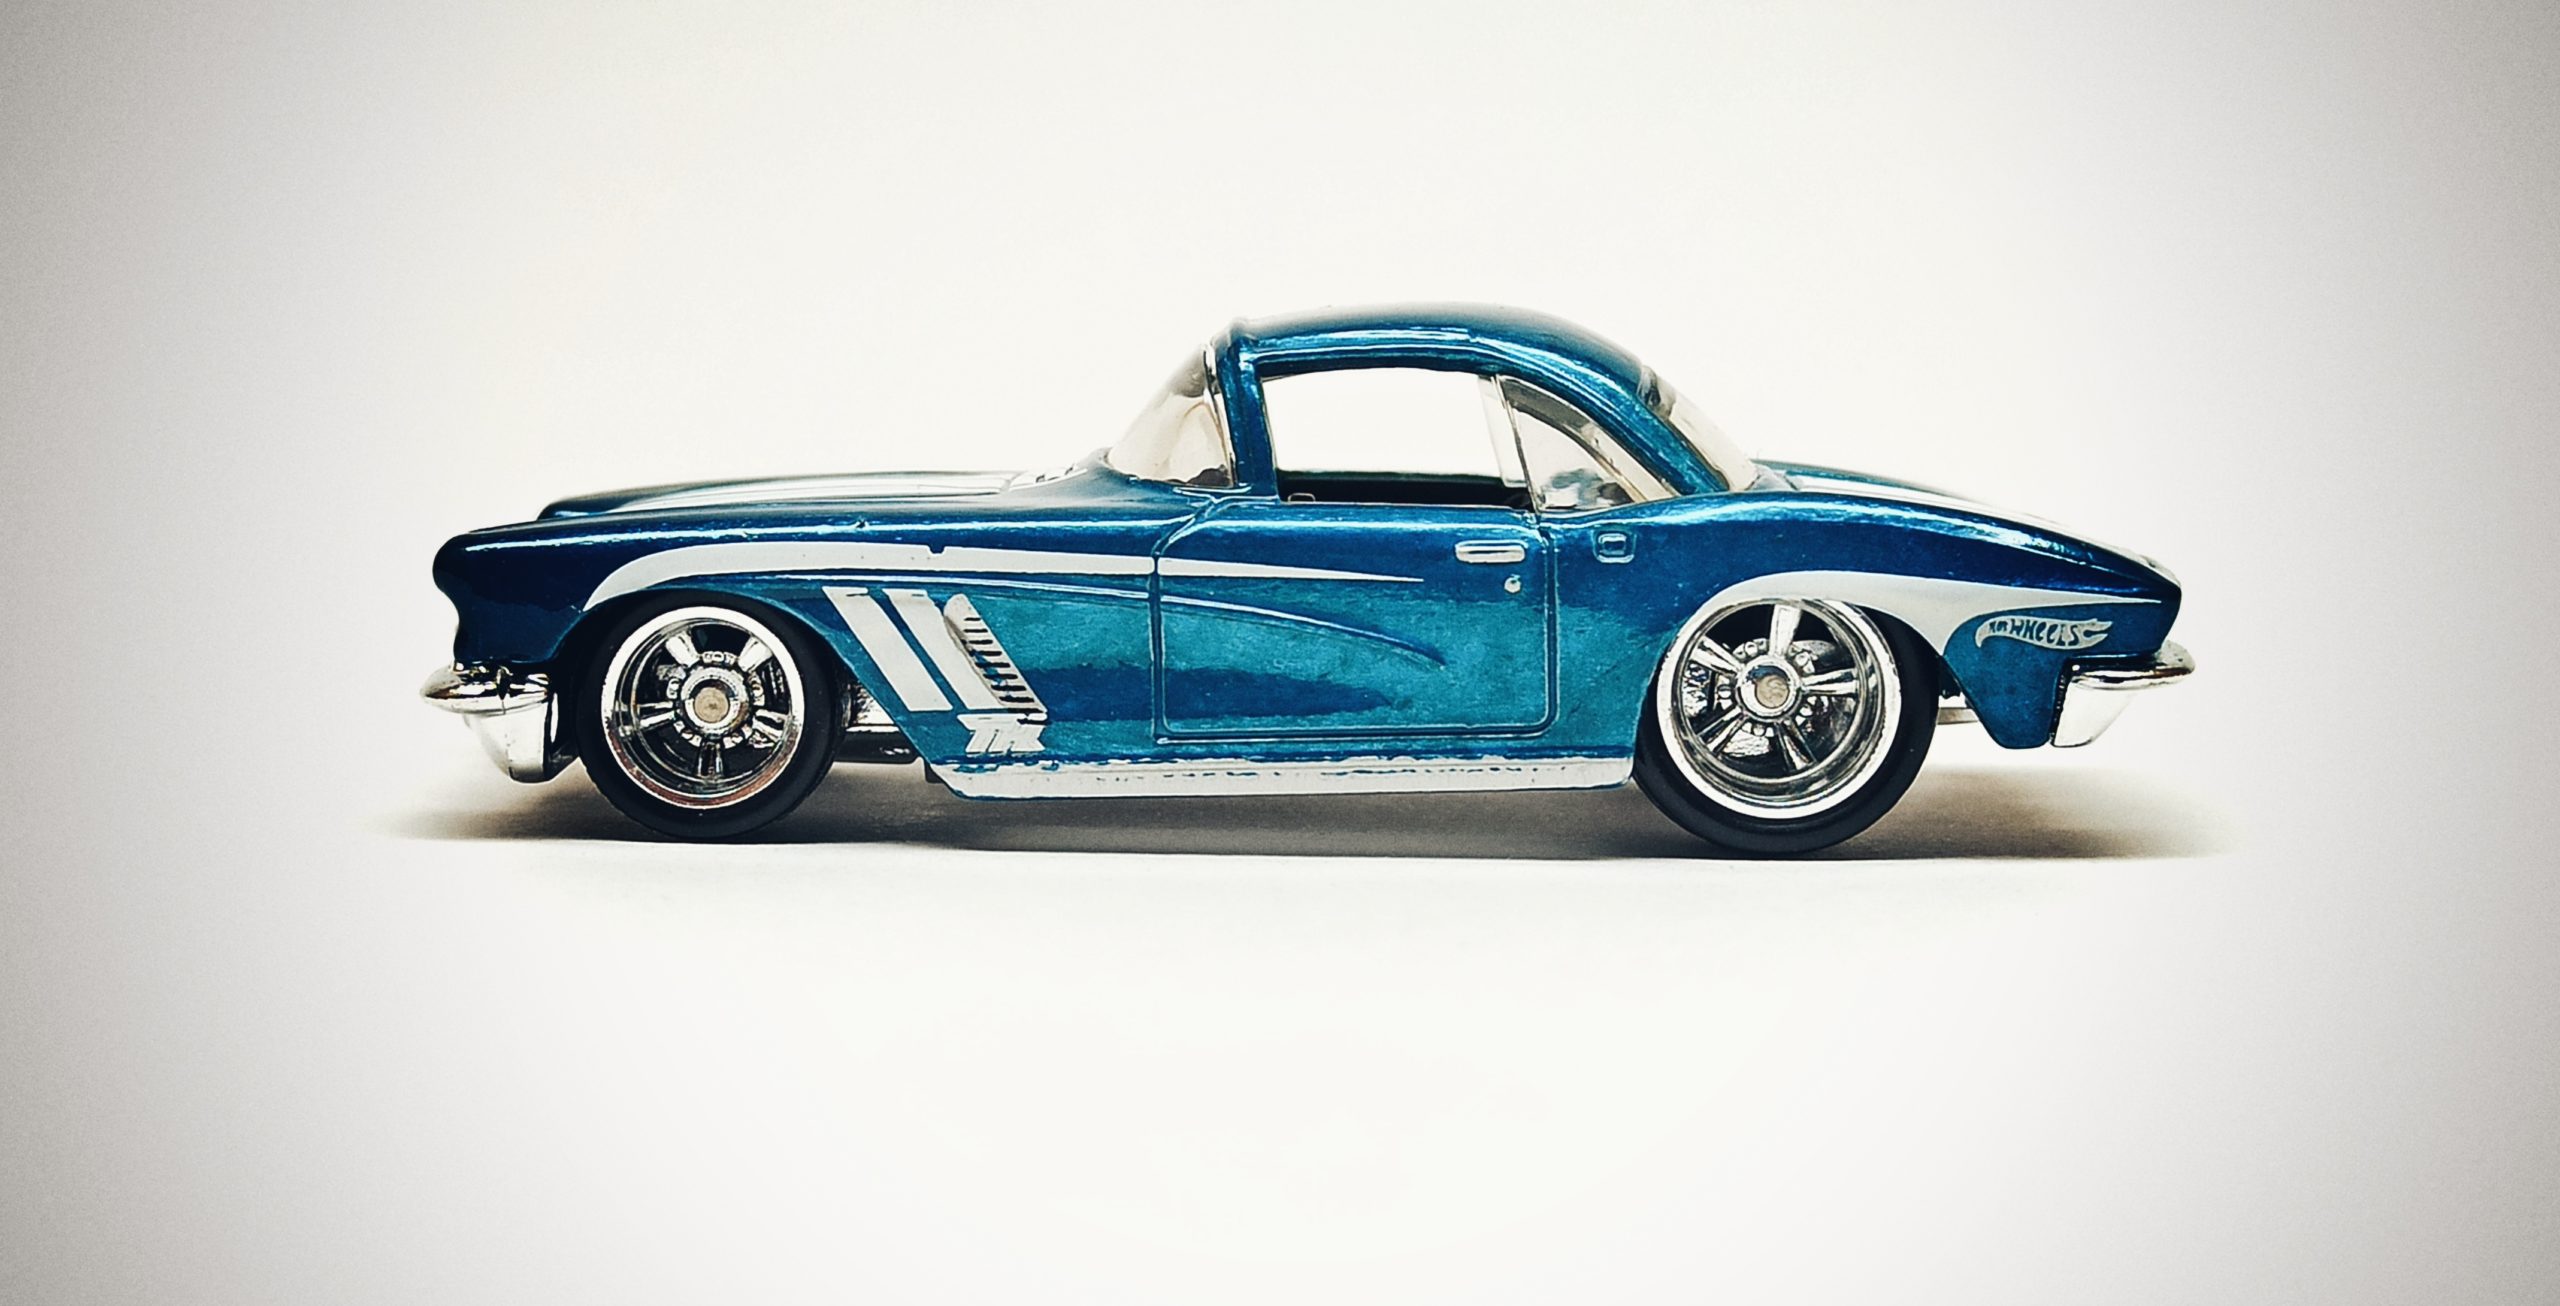 Hot Wheels '62 Corvette (X2016) 2013 (207/250) HW Showroom: Corvette 60th (7/10) spectraflame lite blue Super Treasure Hunt (STH)